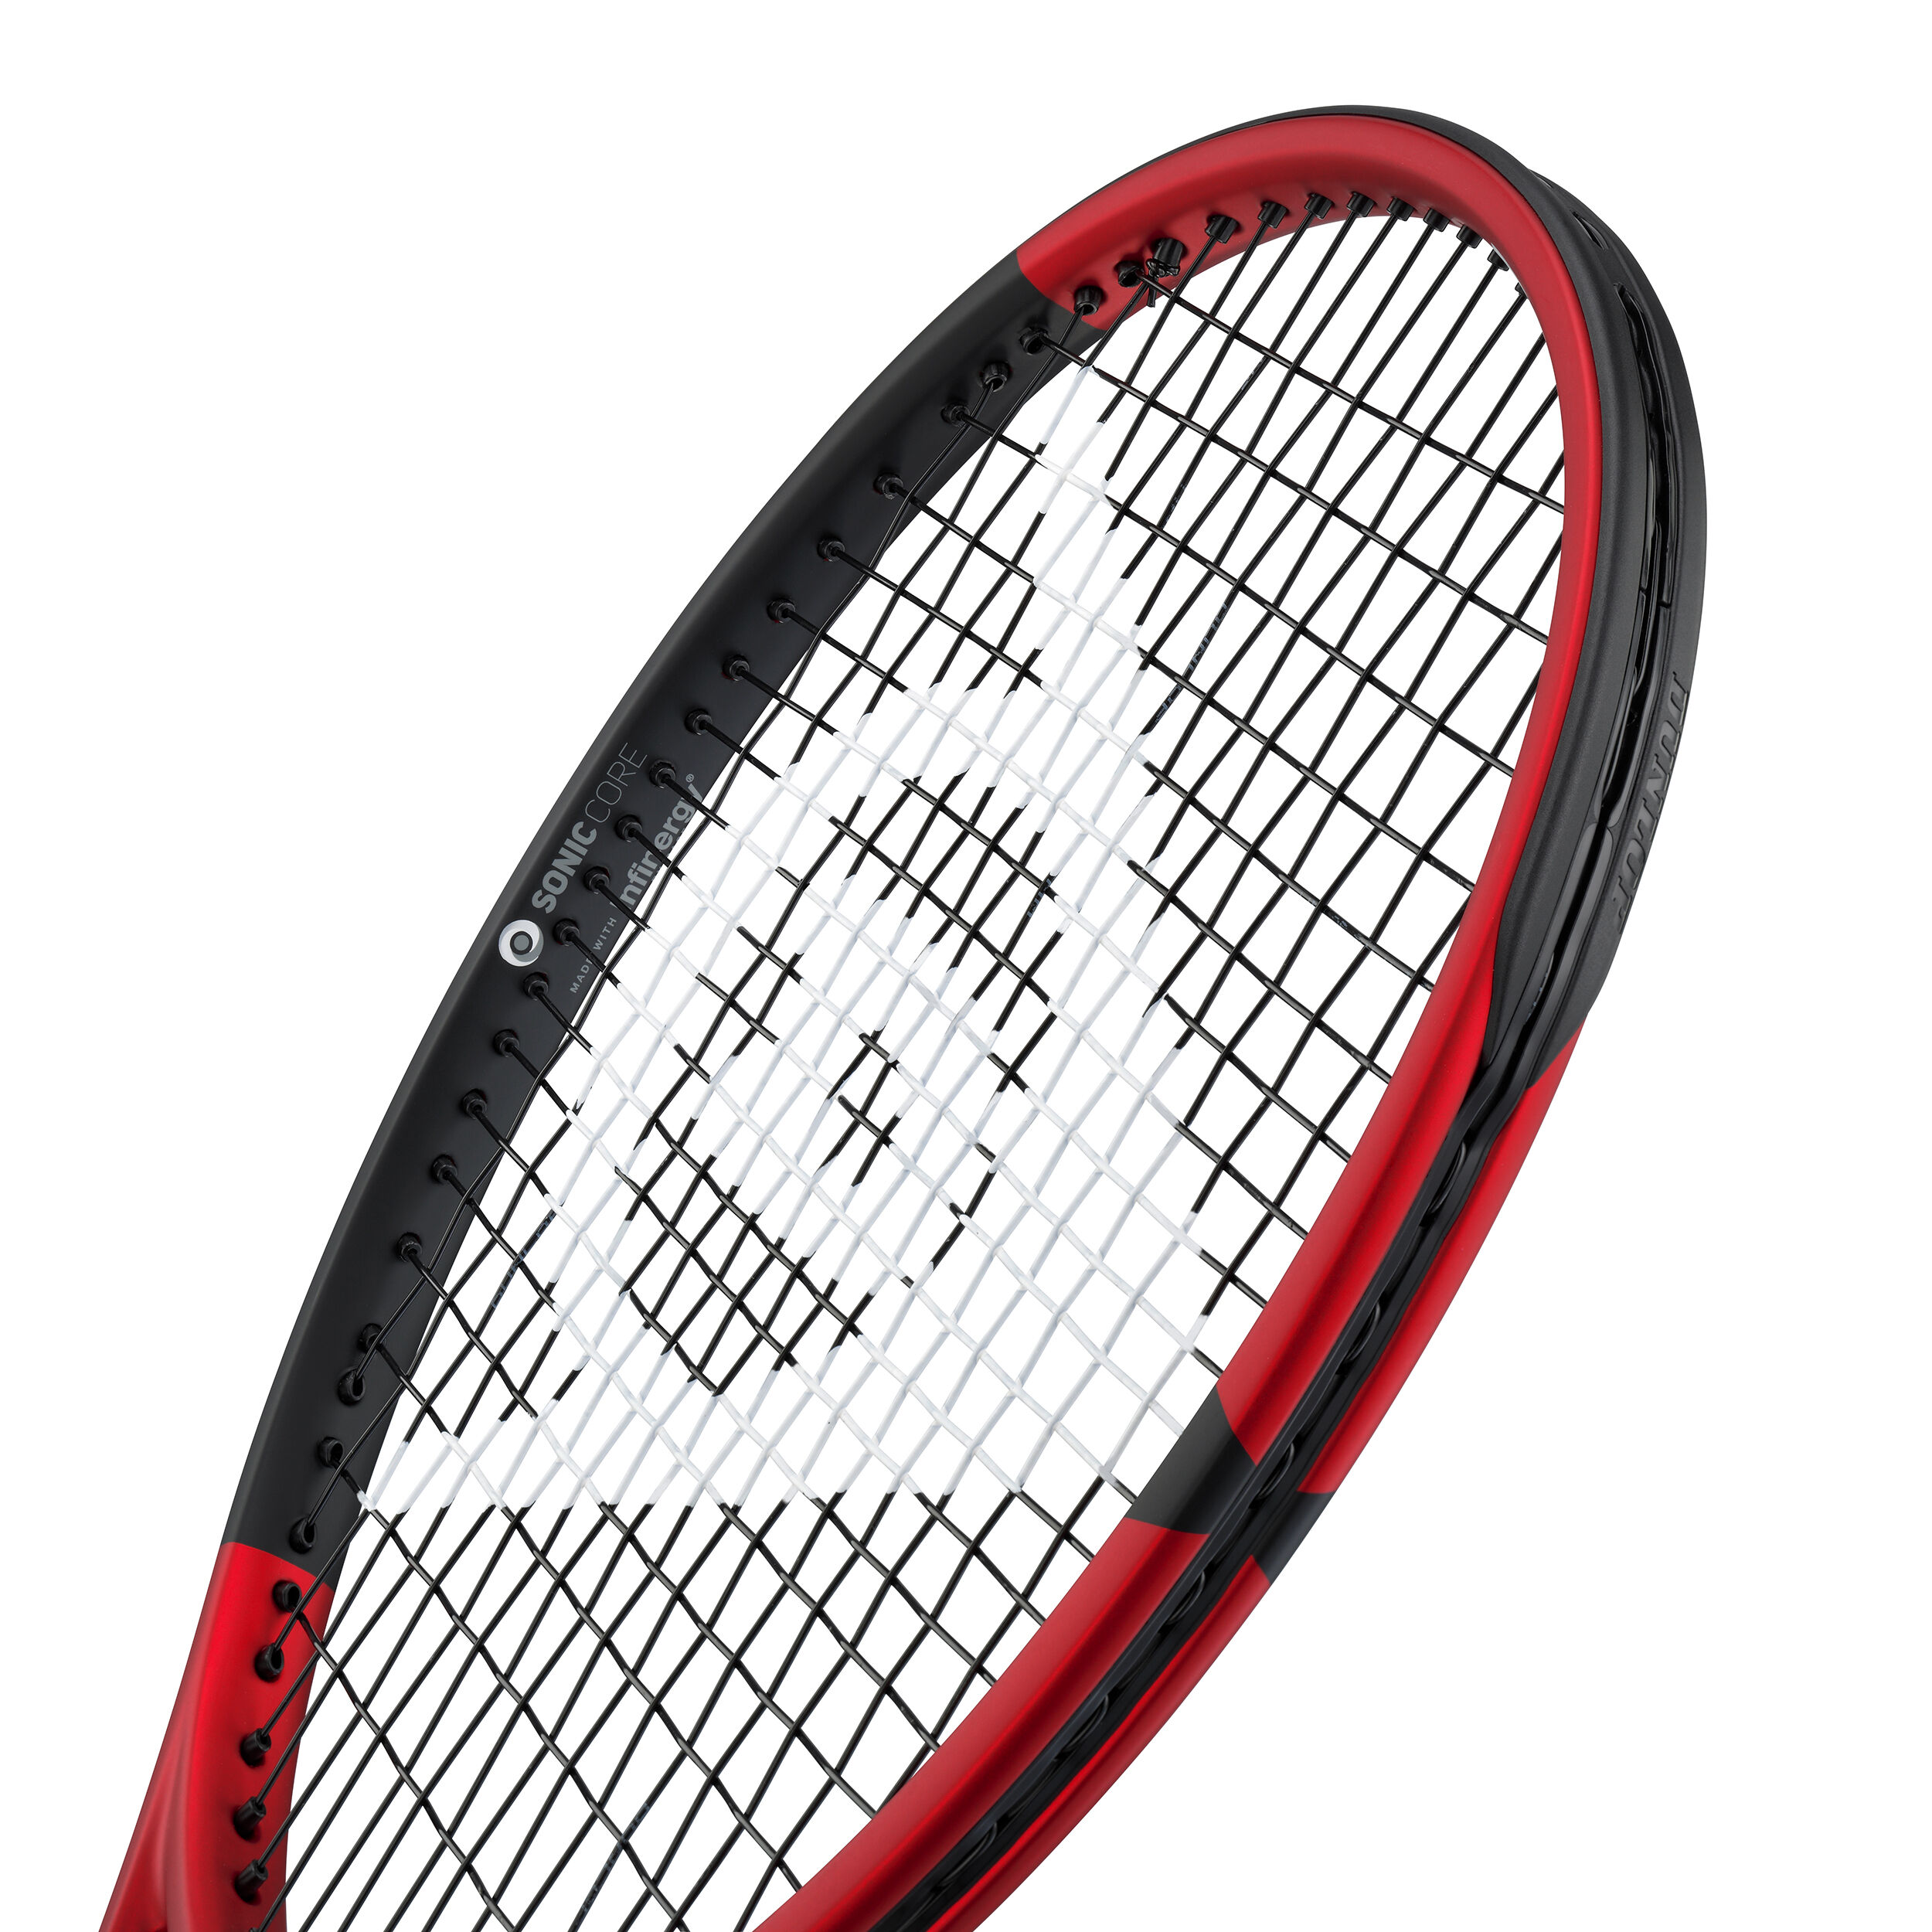 Buy Dunlop CX 200 Tour 18x20 online | Tennis Point COM